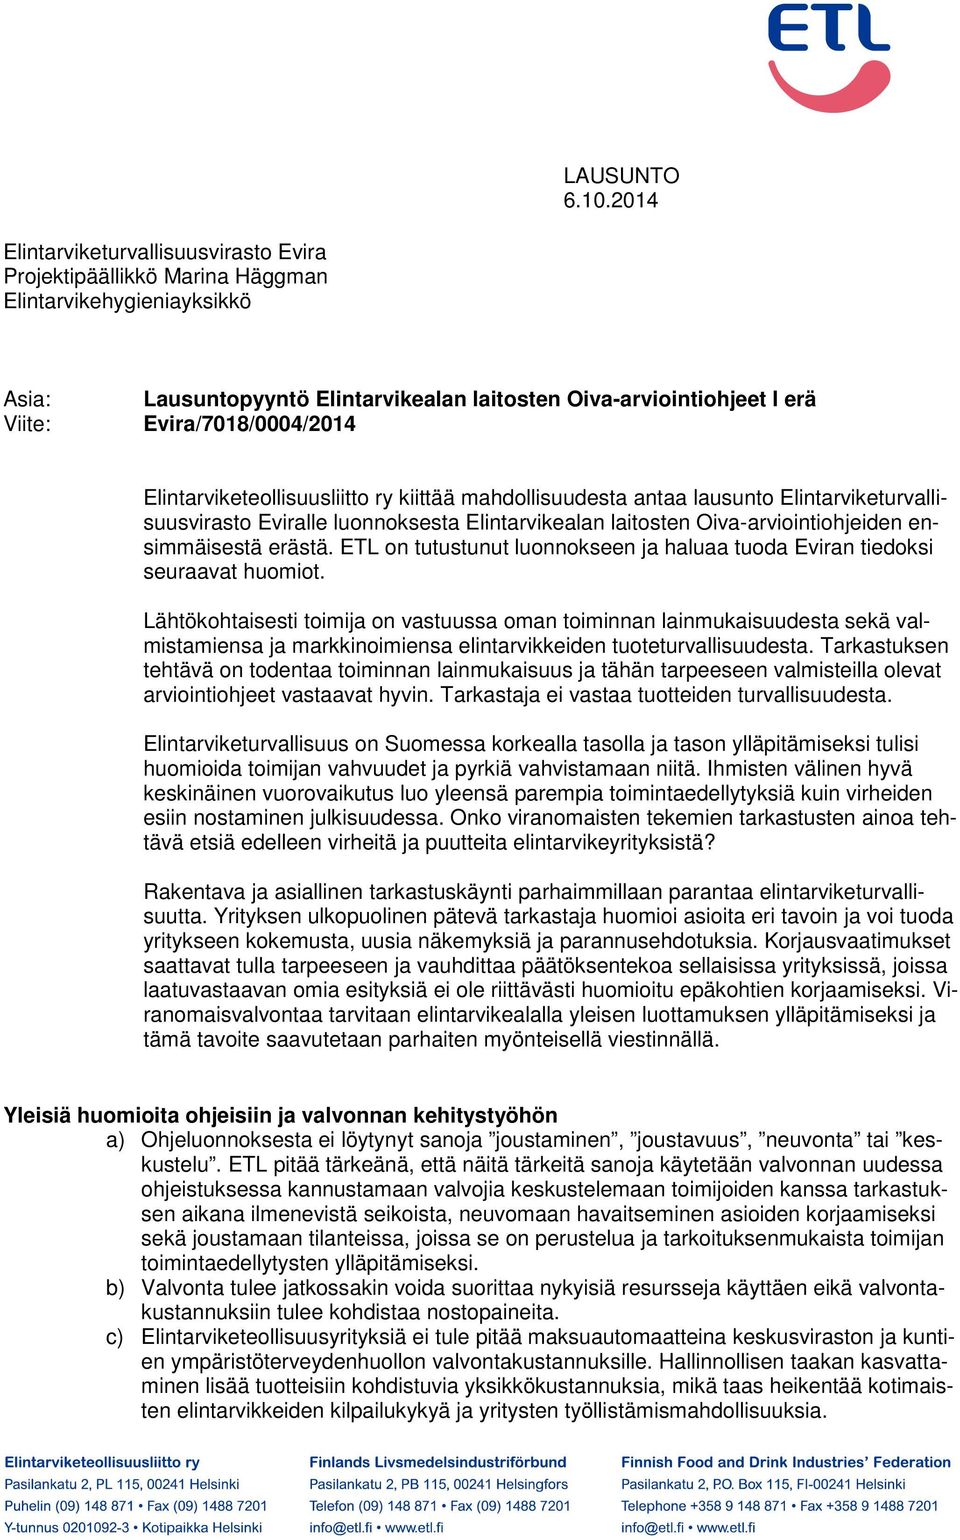 Evira/7018/0004/2014 Elintarviketeollisuusliitto ry kiittää mahdollisuudesta antaa lausunto Elintarviketurvallisuusvirasto Eviralle luonnoksesta Elintarvikealan laitosten Oiva-arviointiohjeiden